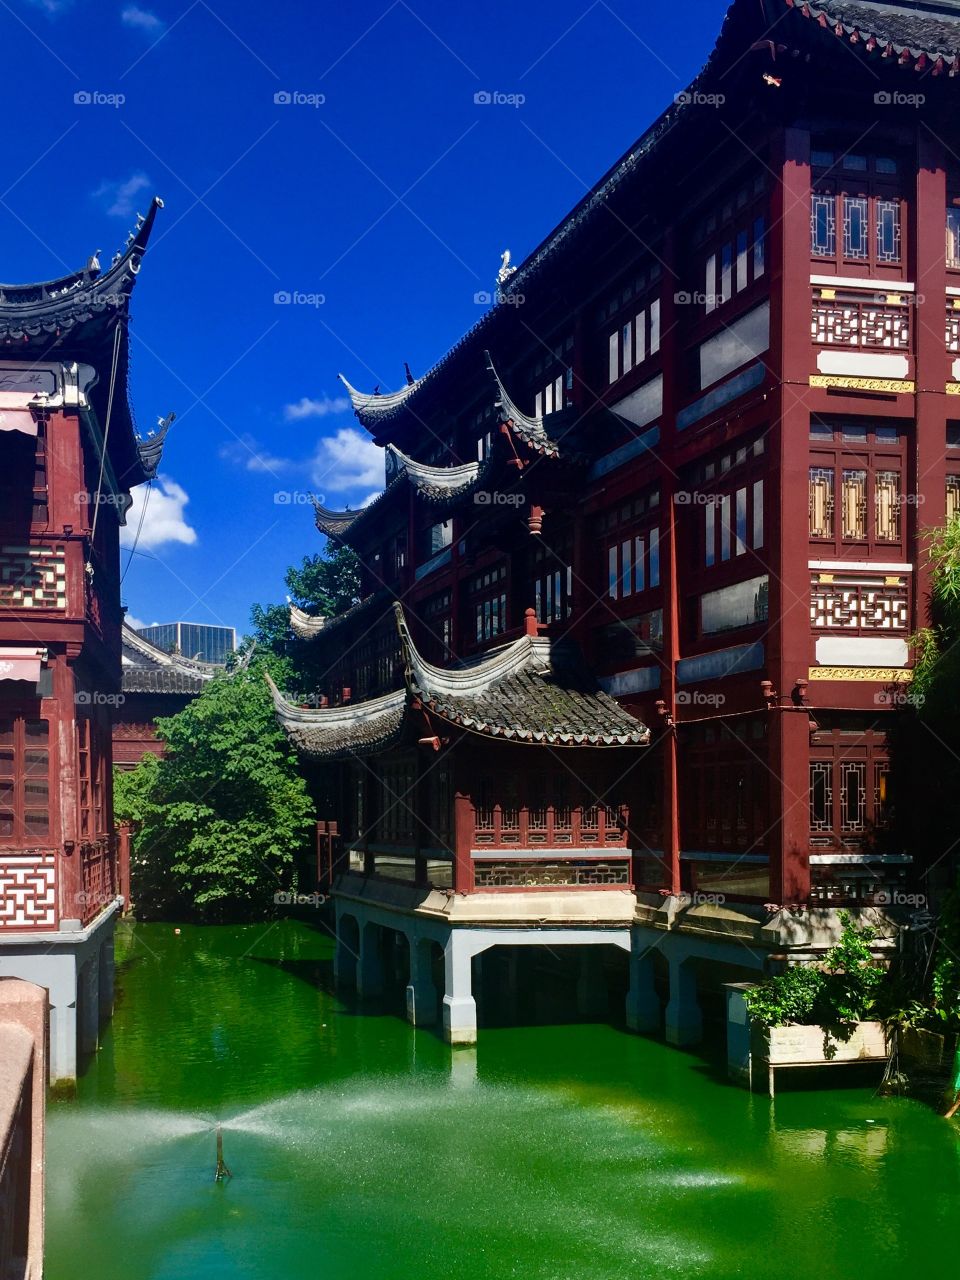 Chinese garden structure